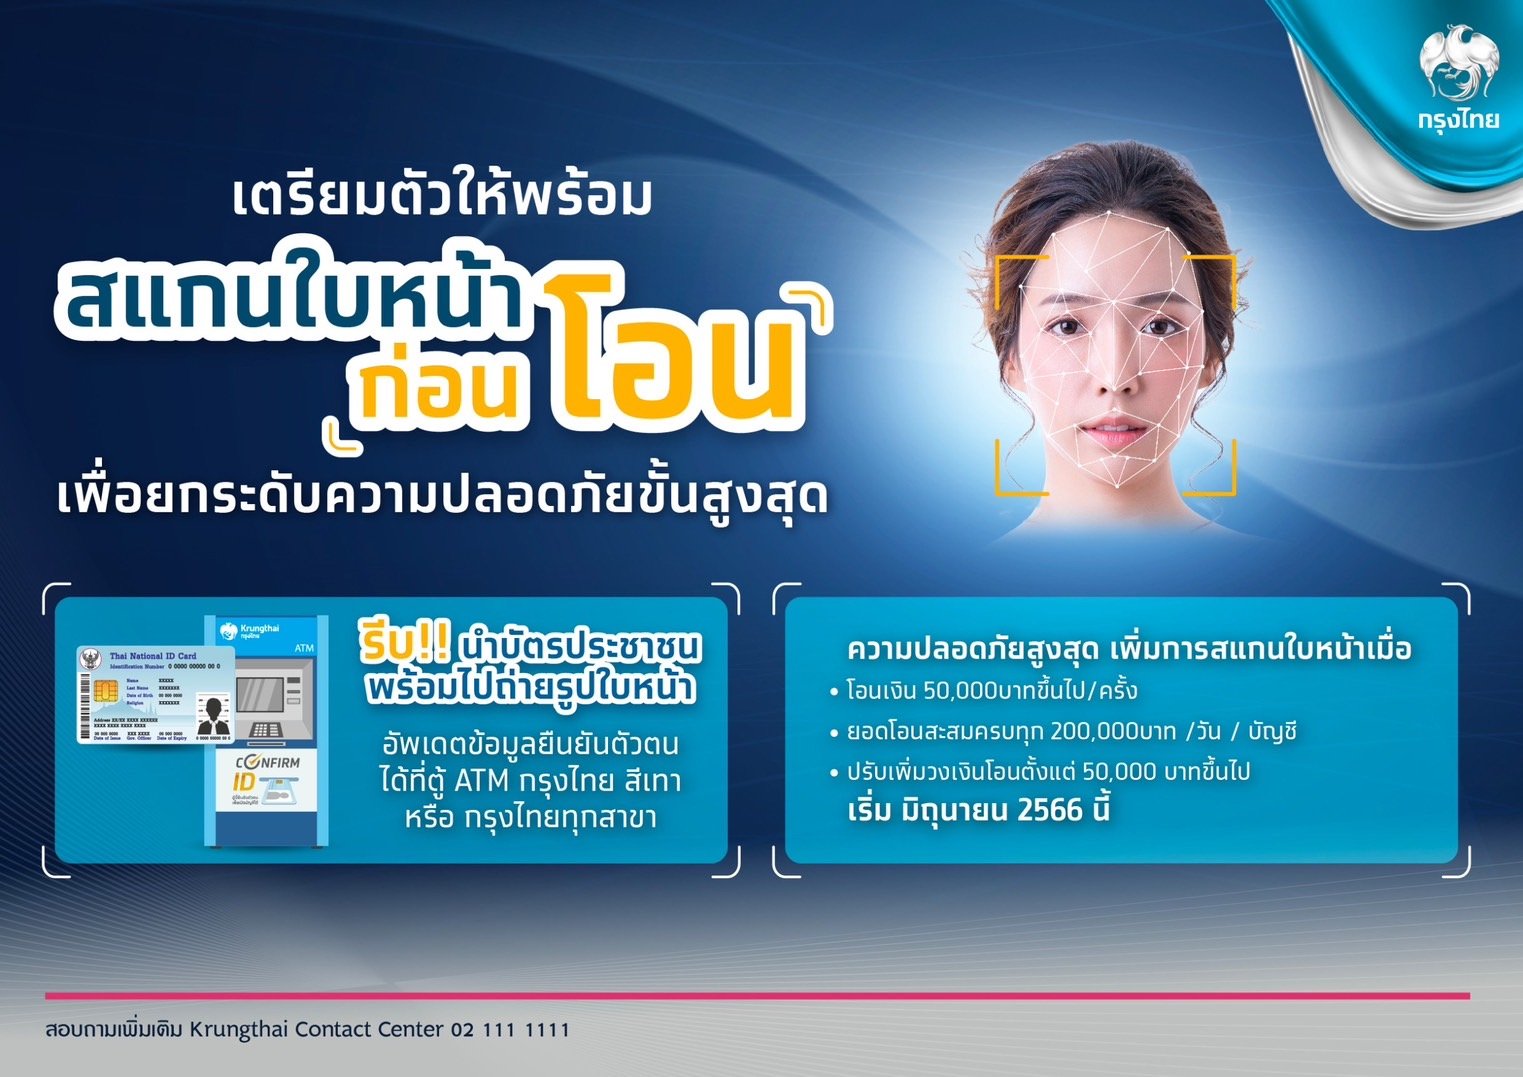 กรุงไทย' เปิดสแกนใบหน้าก่อนทำธุรกรรมโอนเงินผ่านแอปฯ Krungthai Next